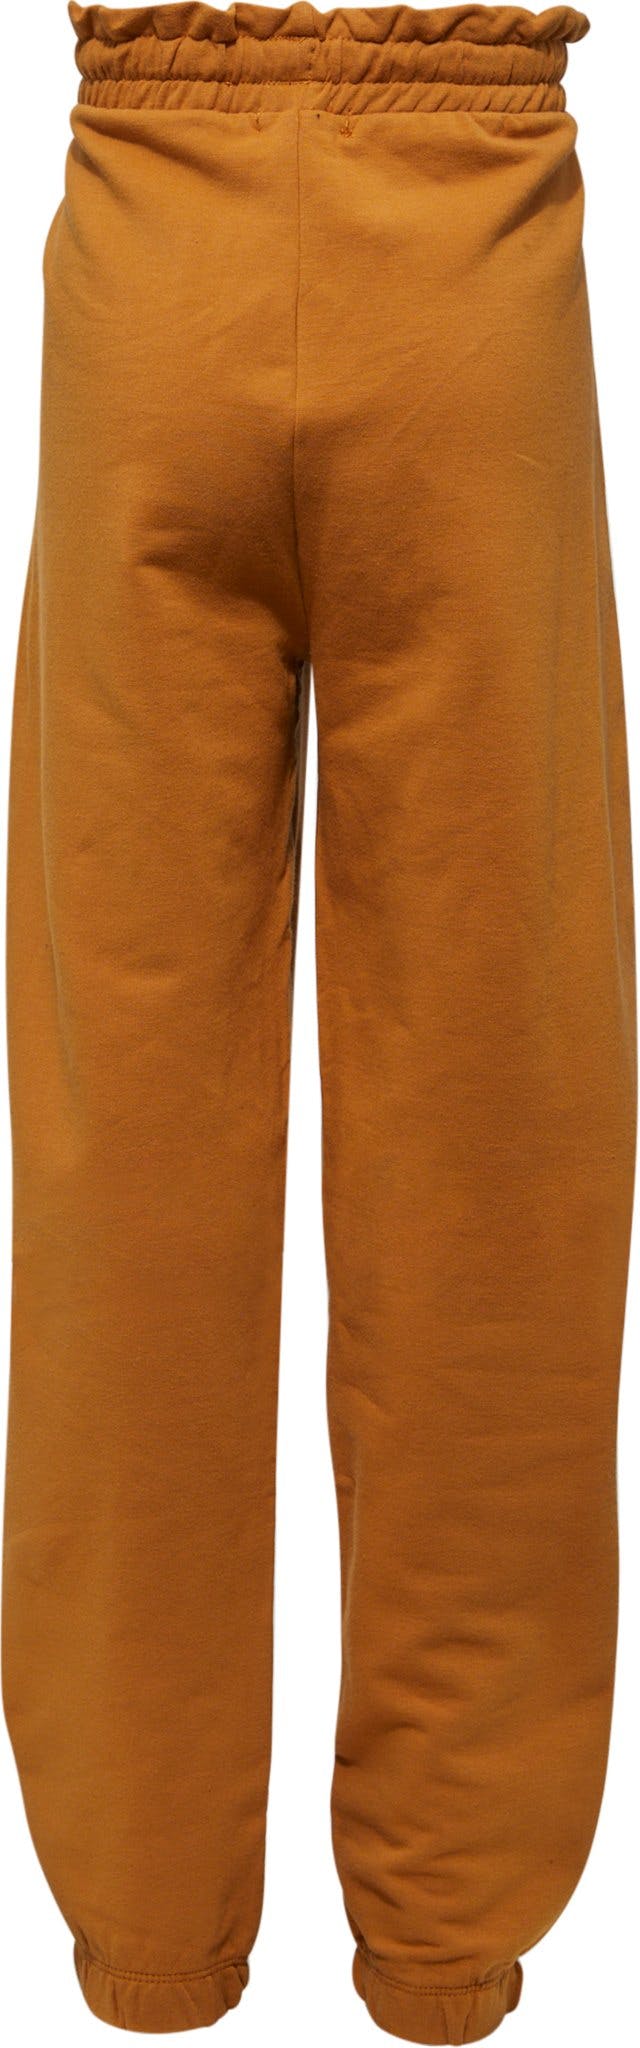 Numéro de l'image de la galerie de produits 3 pour le produit Pantalon en tricot - Fille